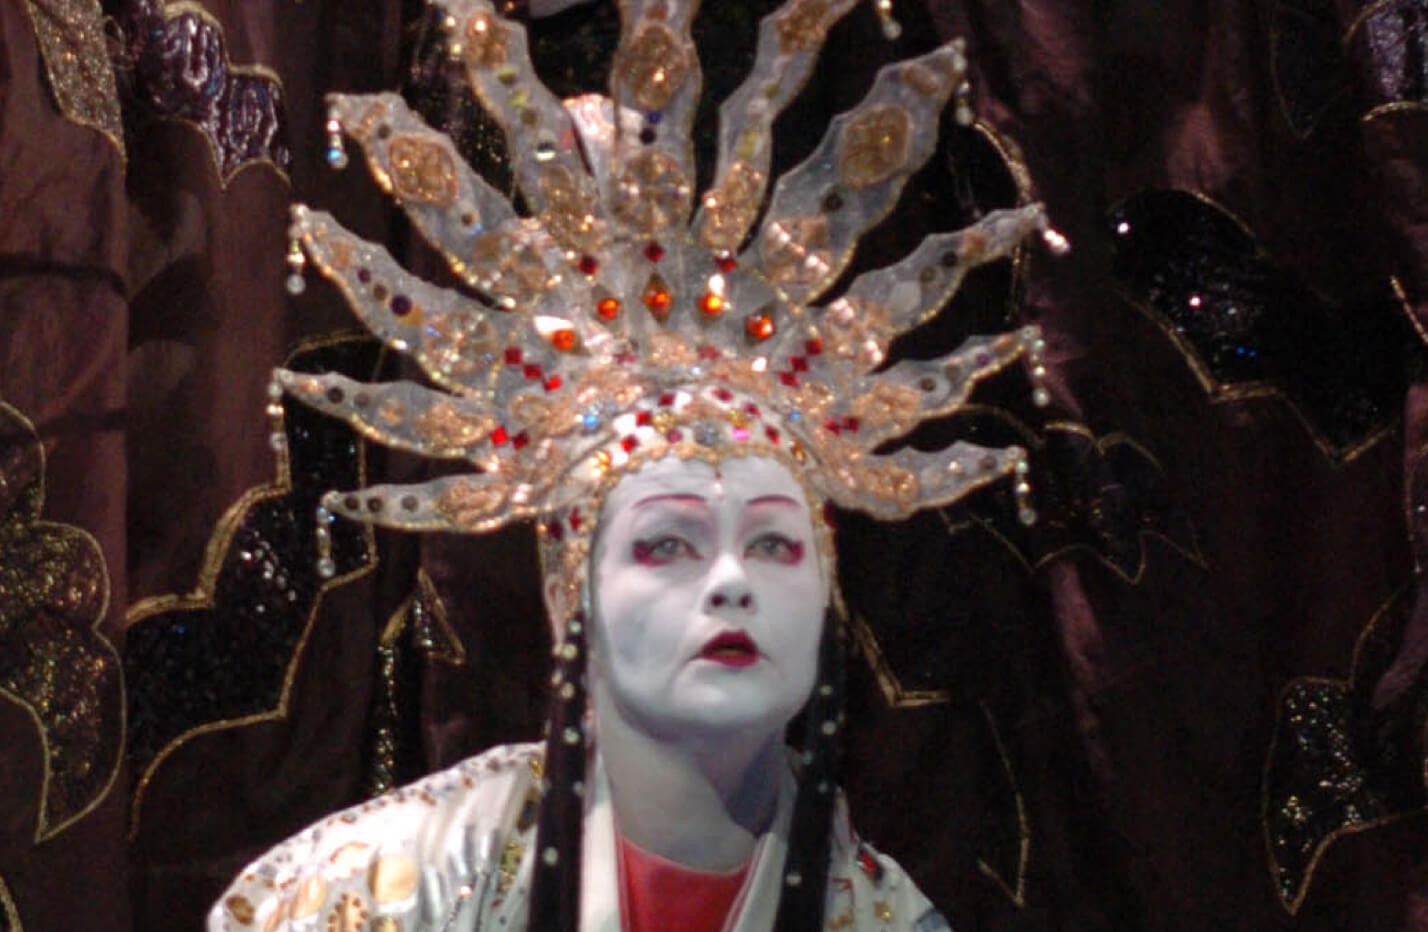 05. Ópera de Richard Strauss "La mujer sin sombra" en el Teatro Real con escenografía inspirada en el "kabuki" -el teatro tradicional japonés. Foto: EFE/Sergio Barrenechea